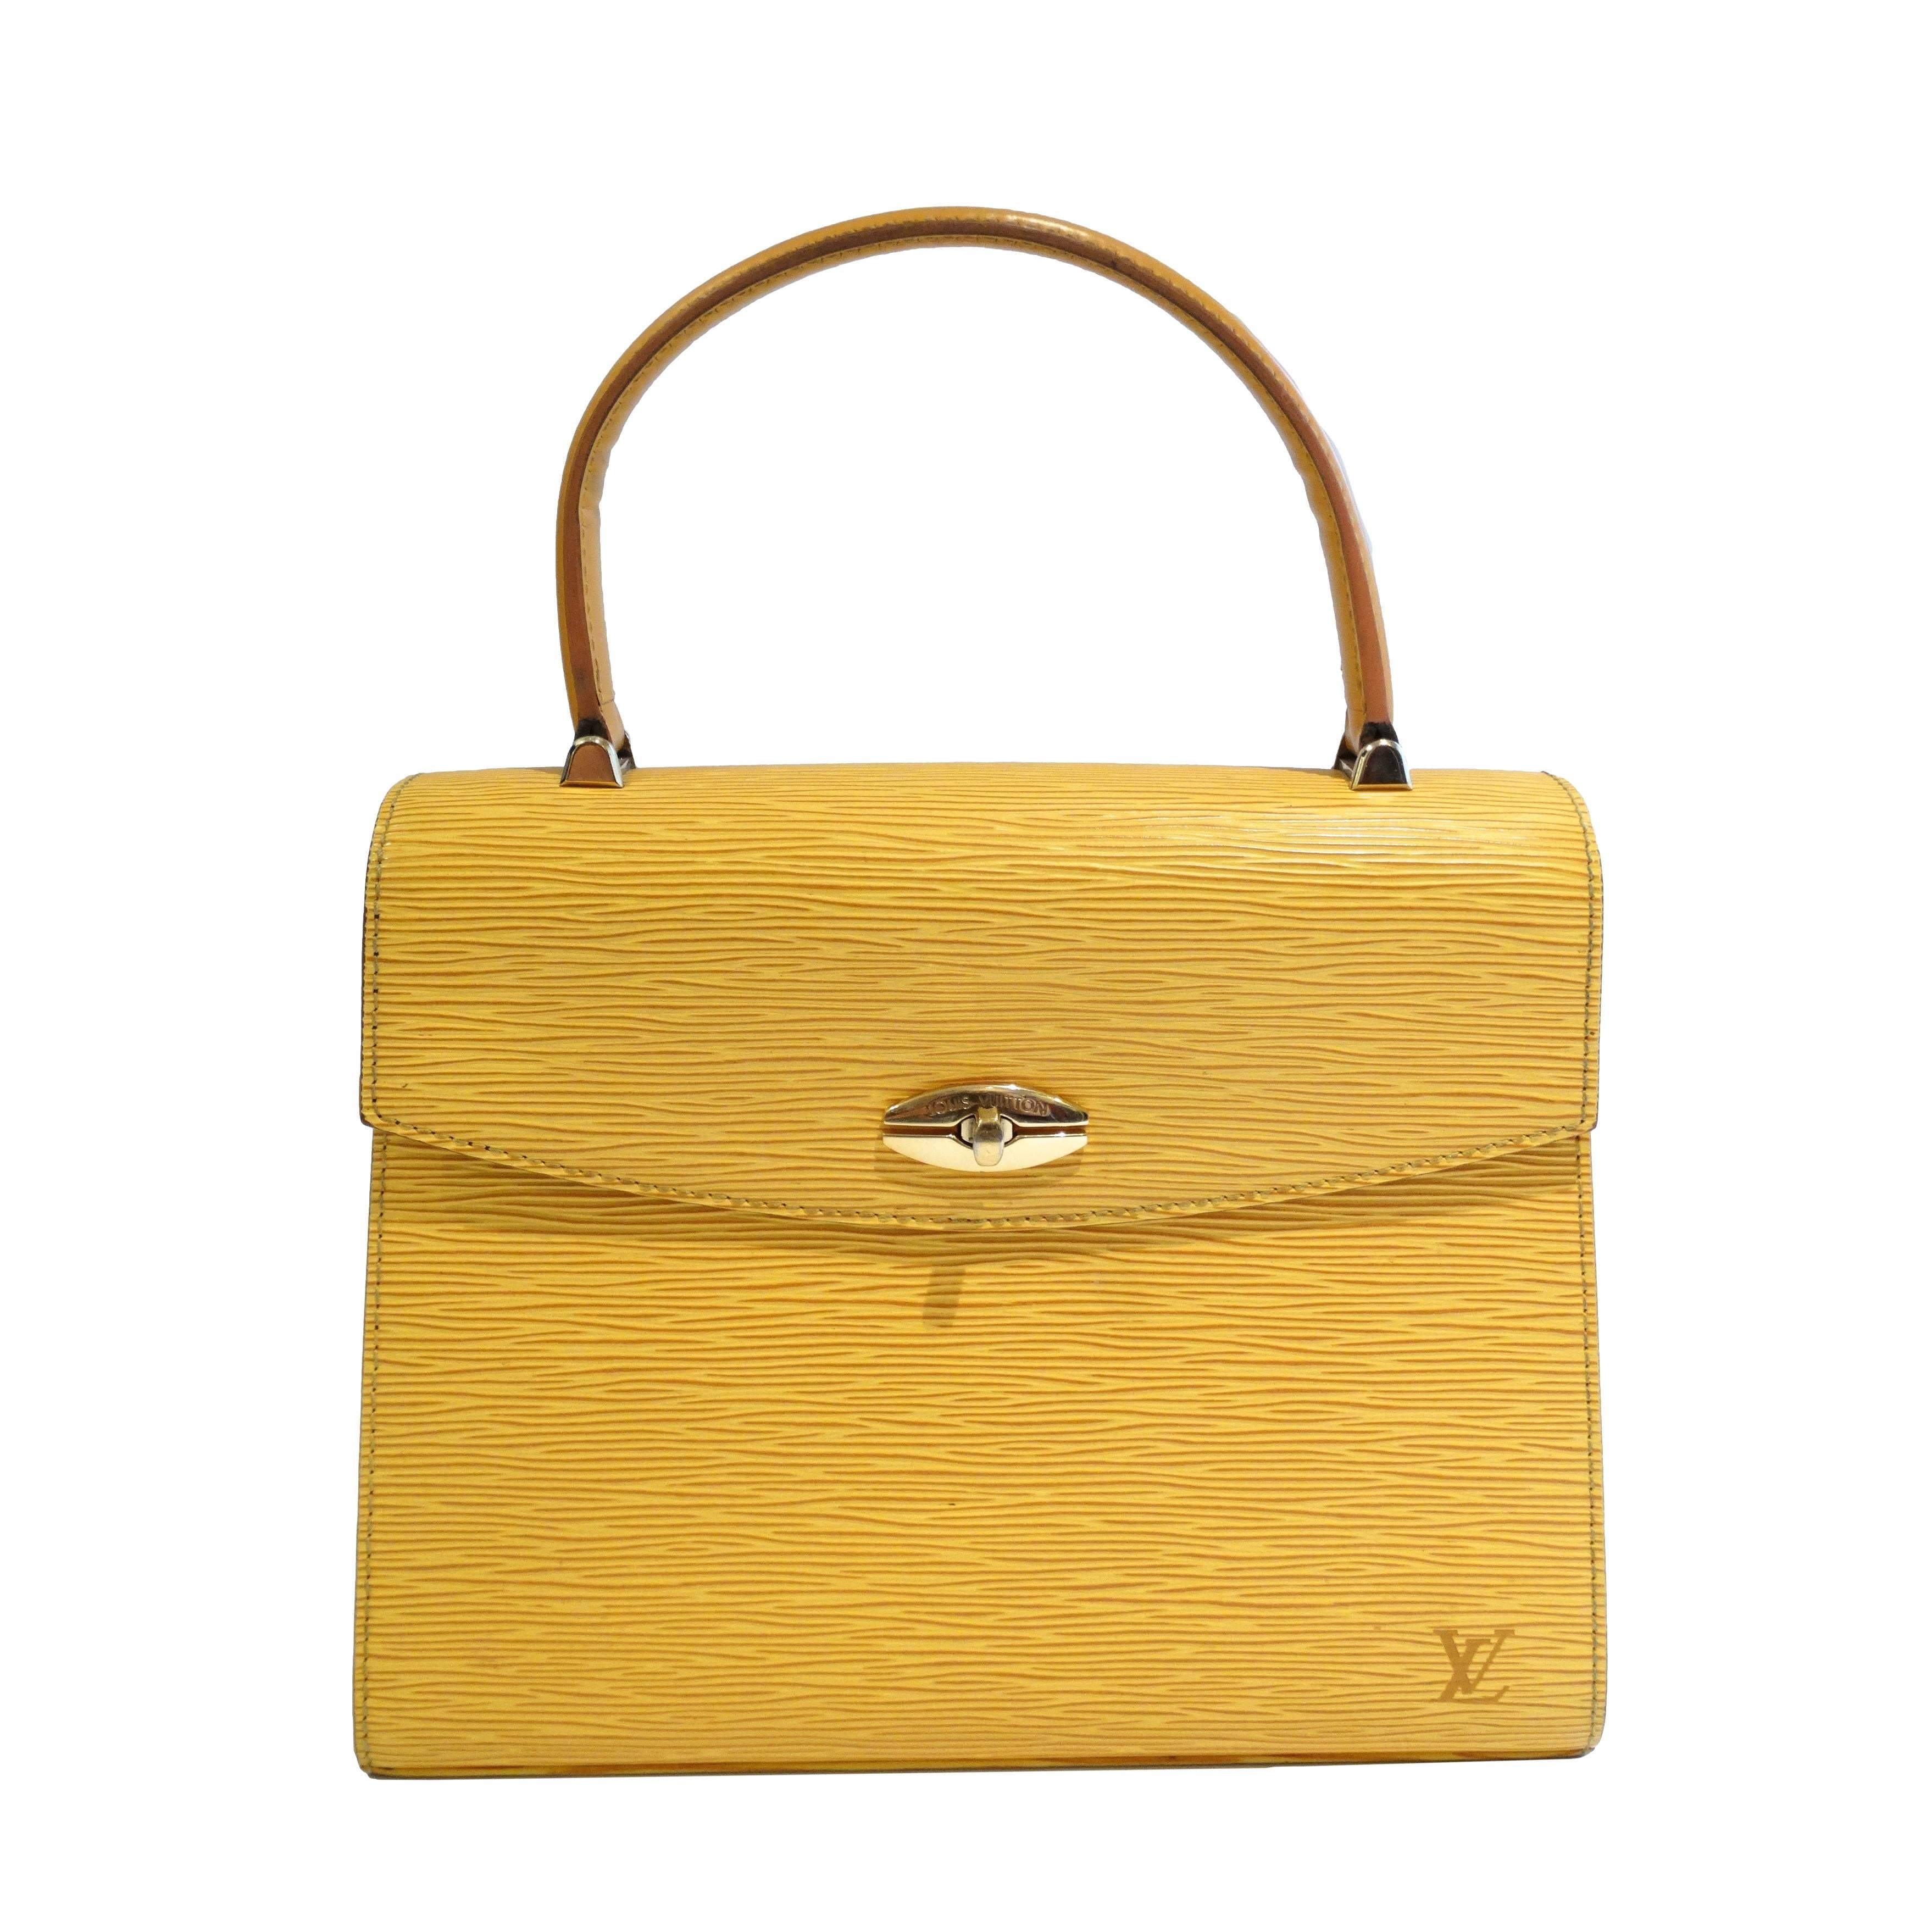 1995 Louis Vuitton Yellow Epi Leather Malesherbes Bag